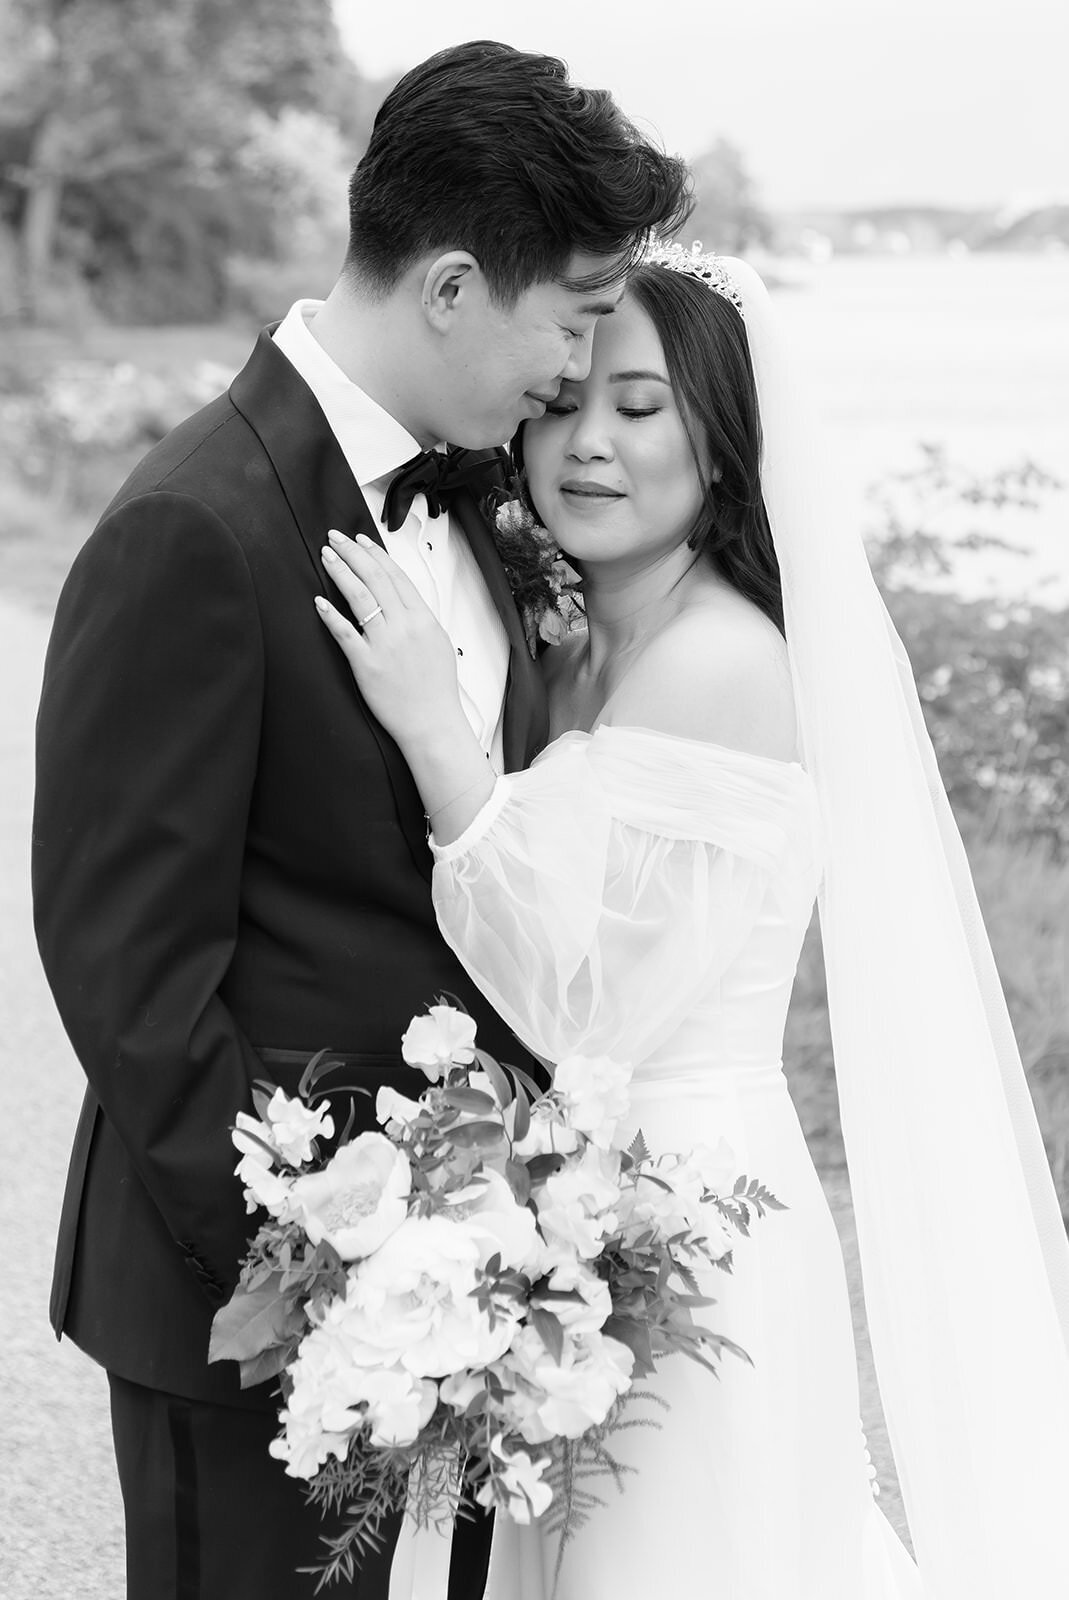 Wedding Photographer helloalora Anna Lundgren wedding at Skansen in Stockholm black and white portrait